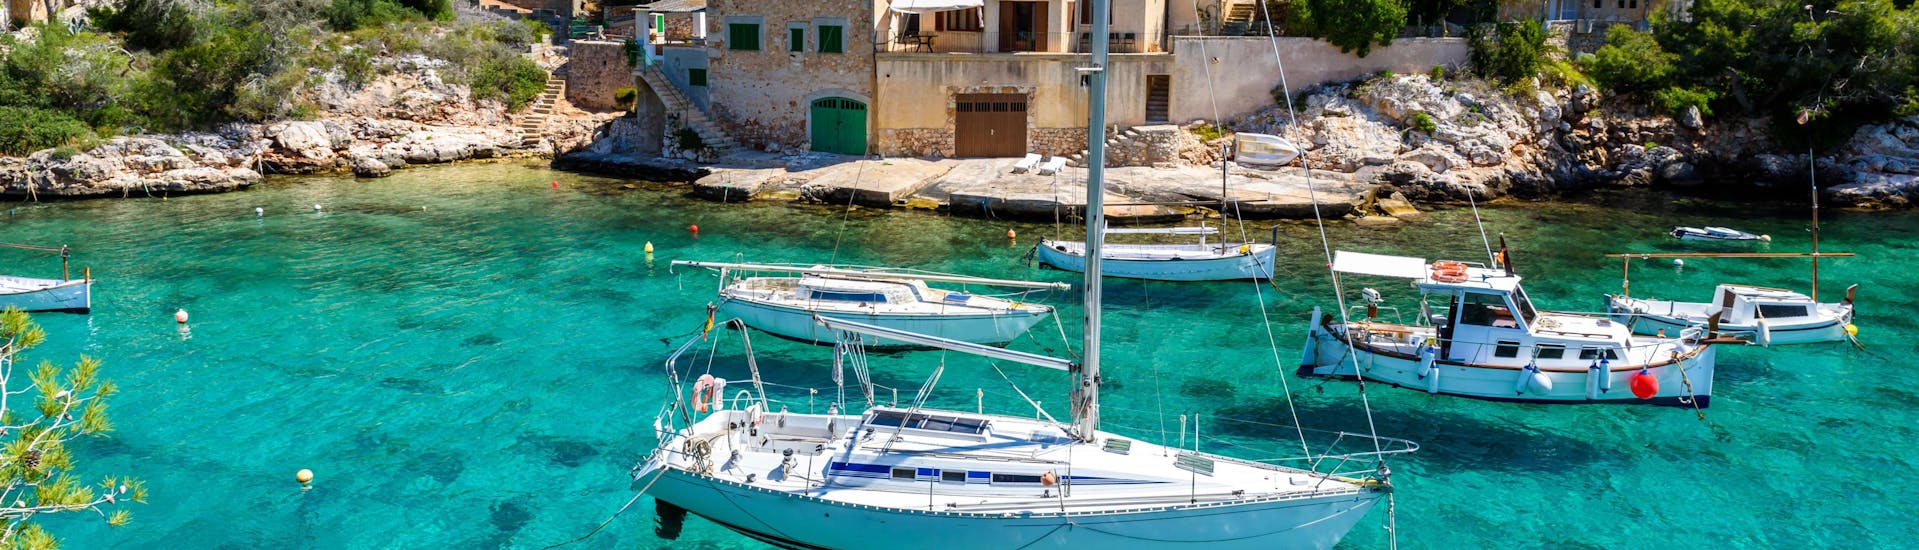 Ein Bild der malerischen Cala Figuera, einem der vielen Orte die man bei einer Bootstour in Mallorca besuchen kann.